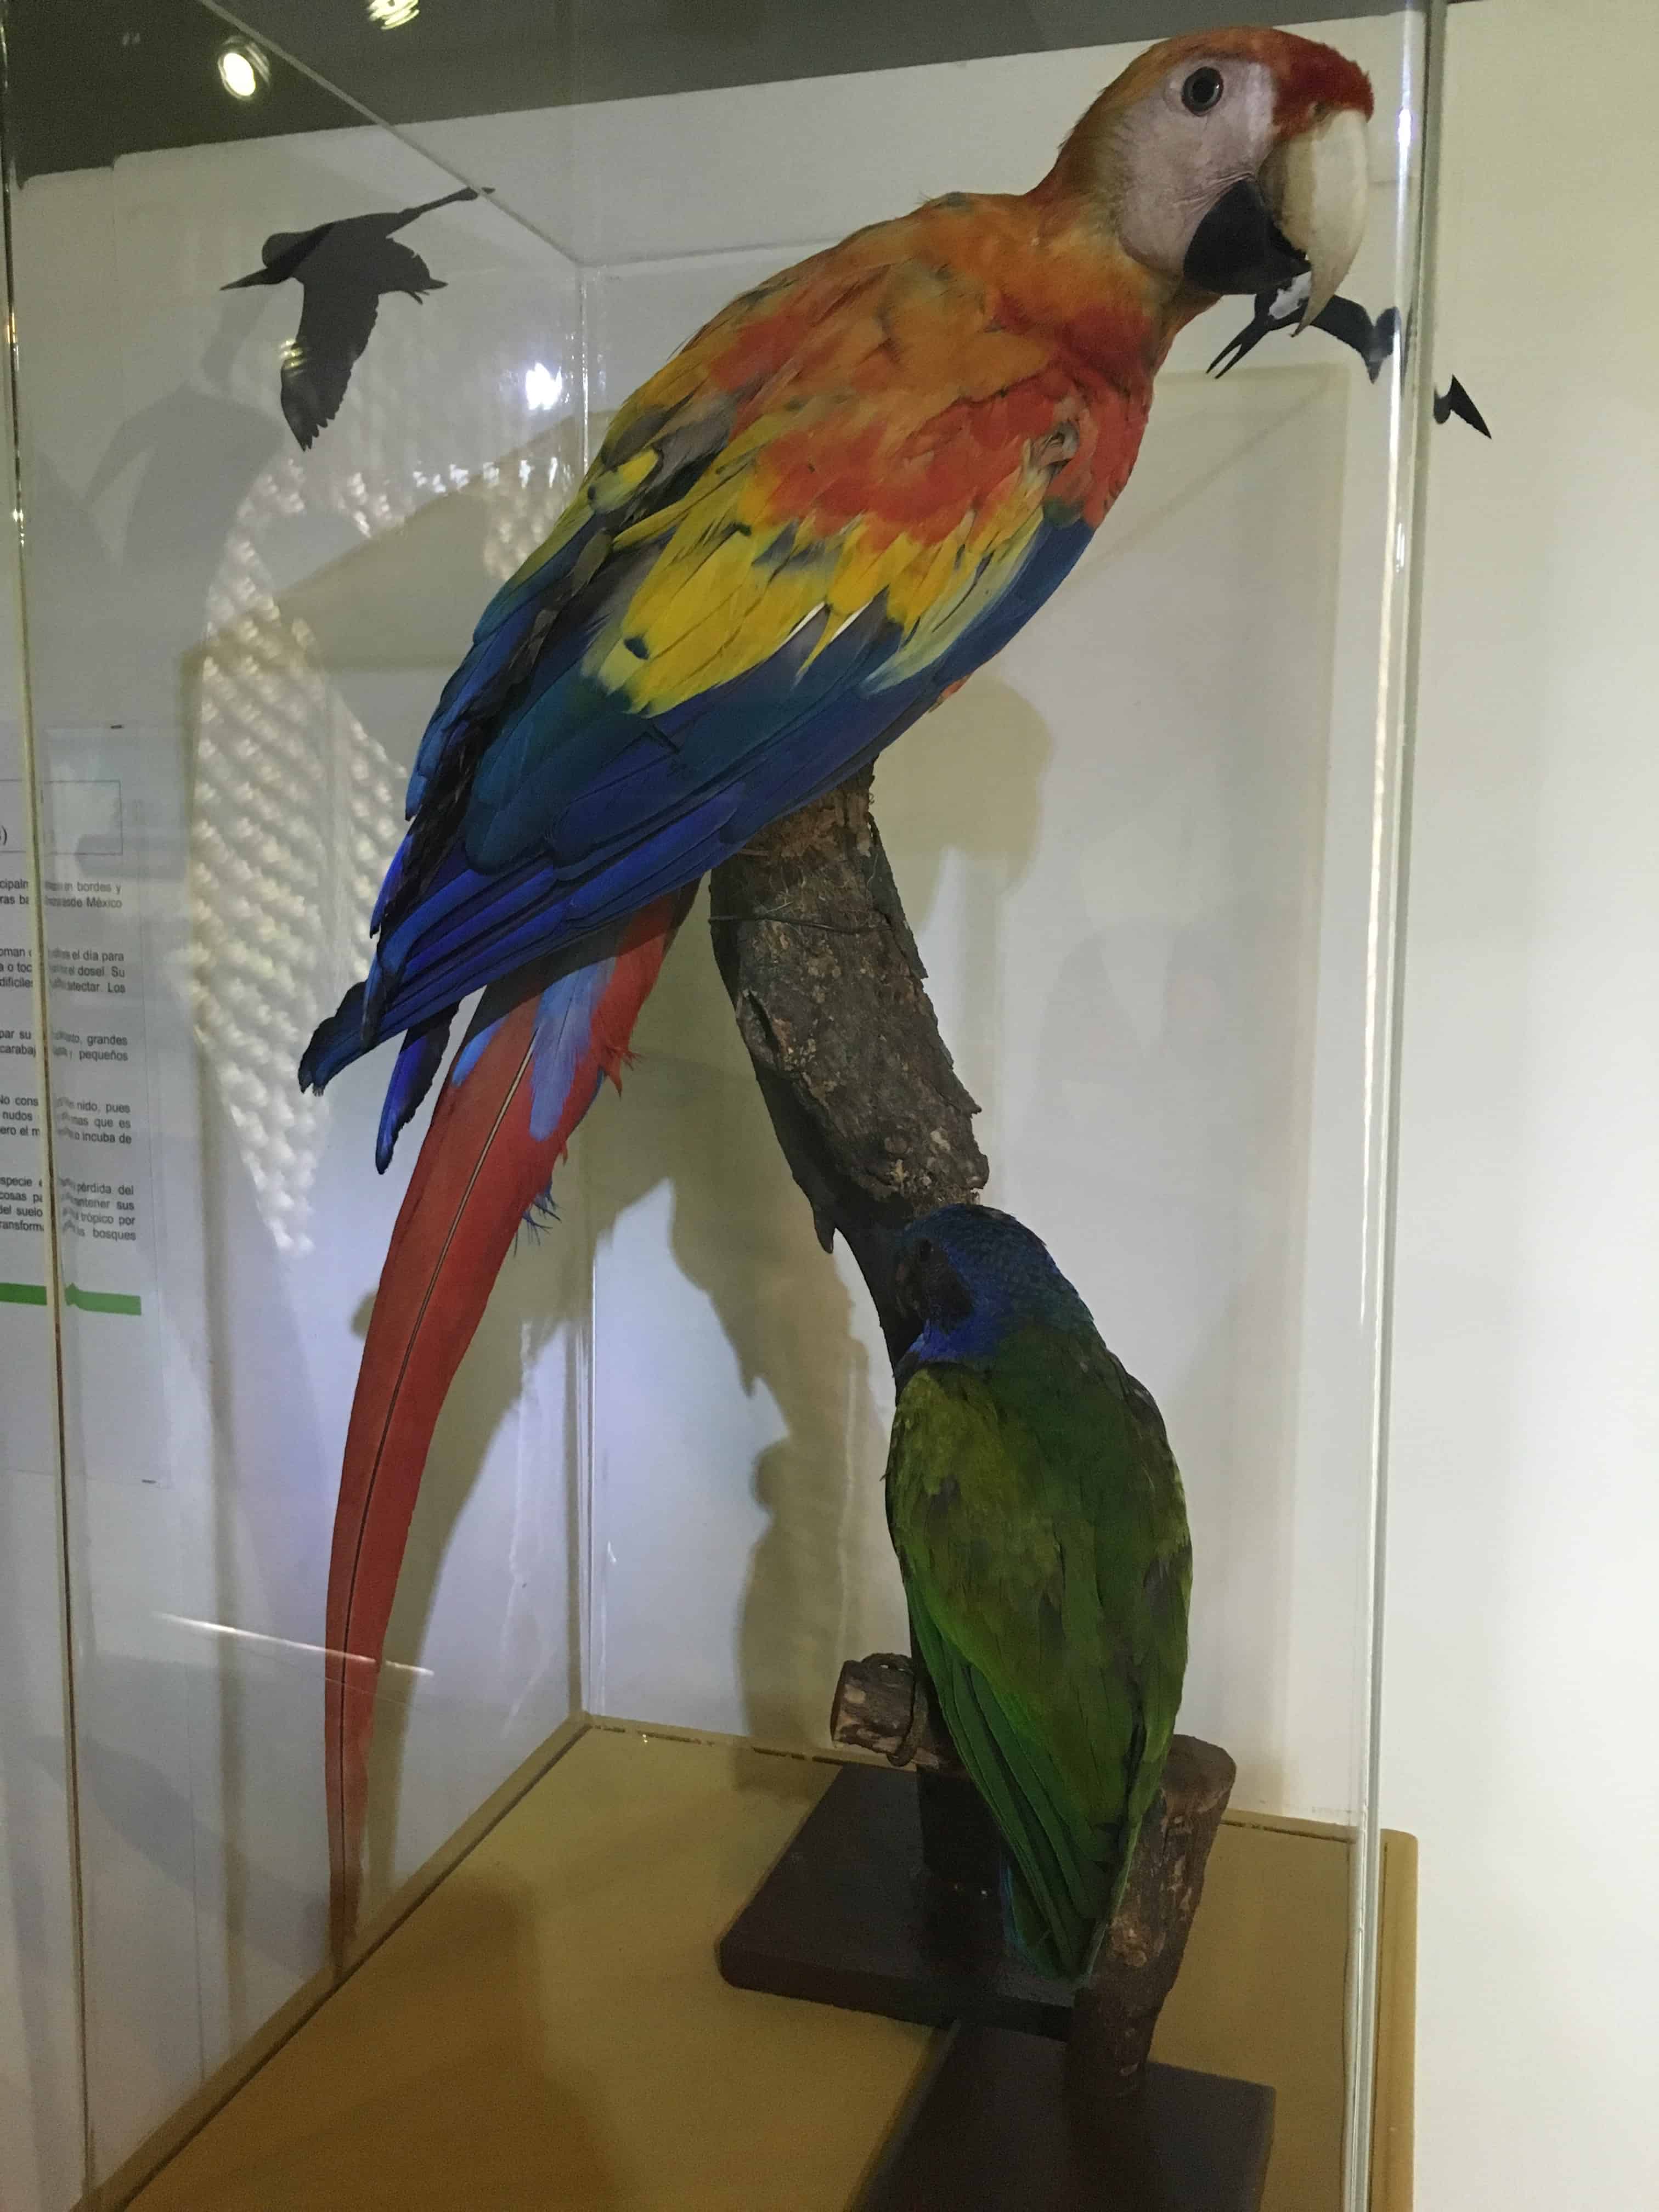 Bird exhibit at Museo Arqueológico Calima in Darién, Valle del Cauca, Colombia